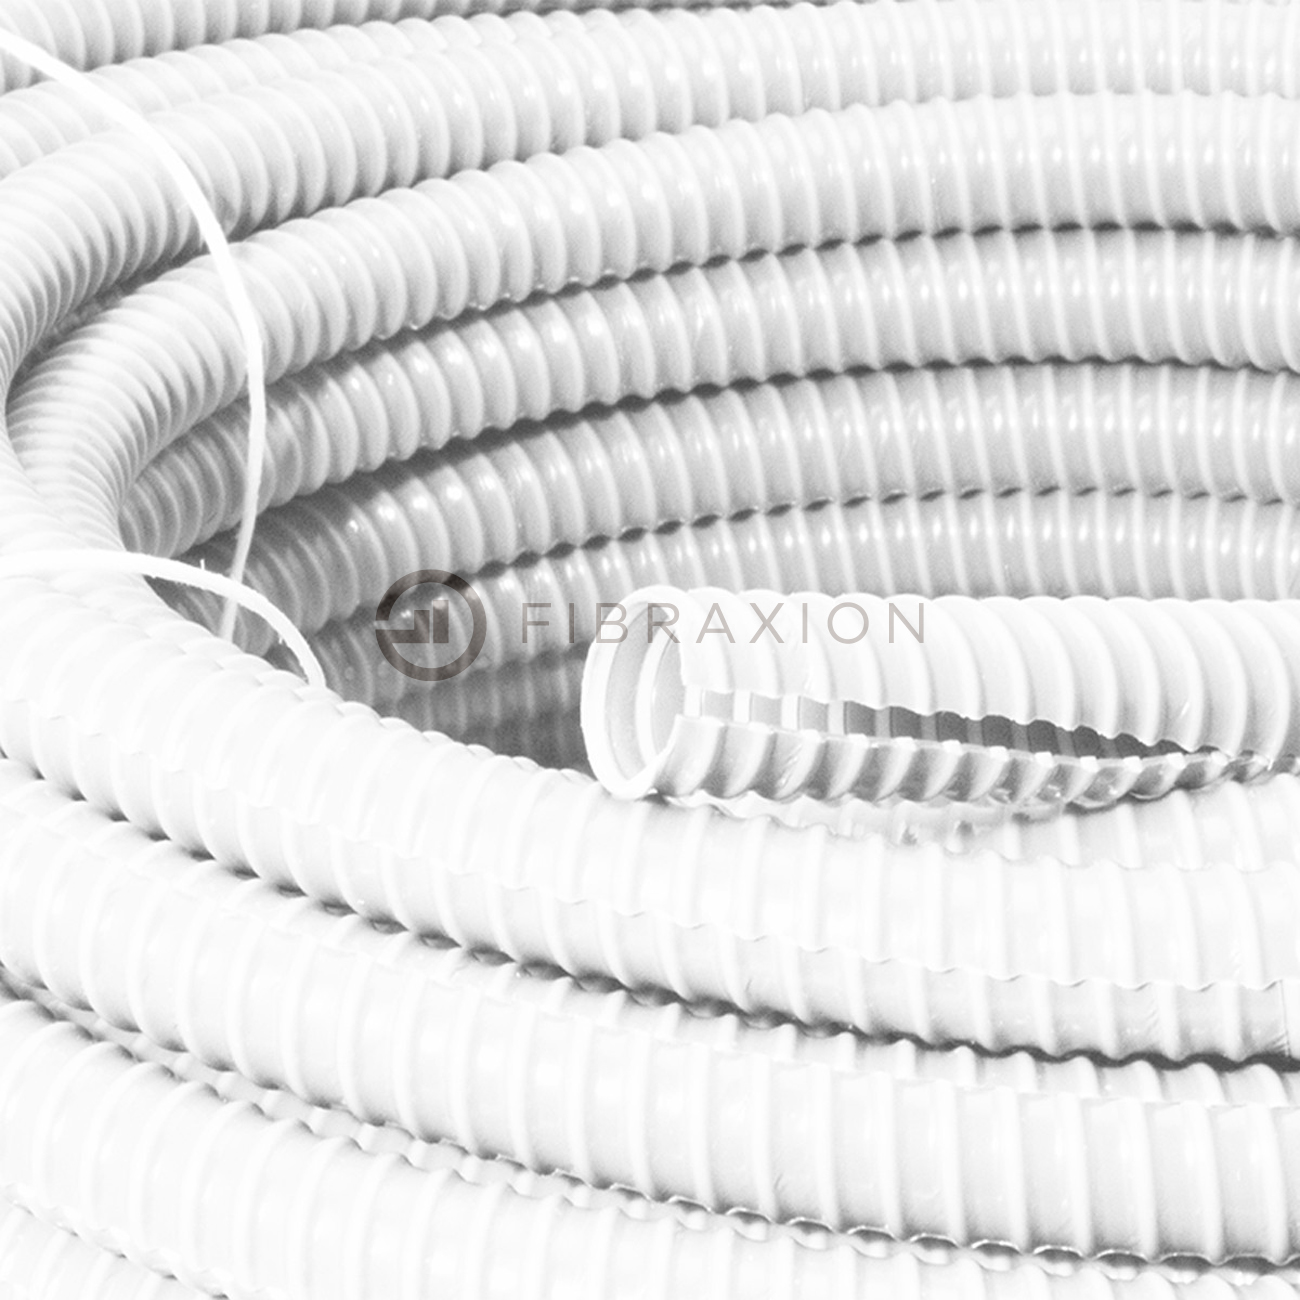 Gaine fendue PVC 30m – différents coloris - Fibraxion